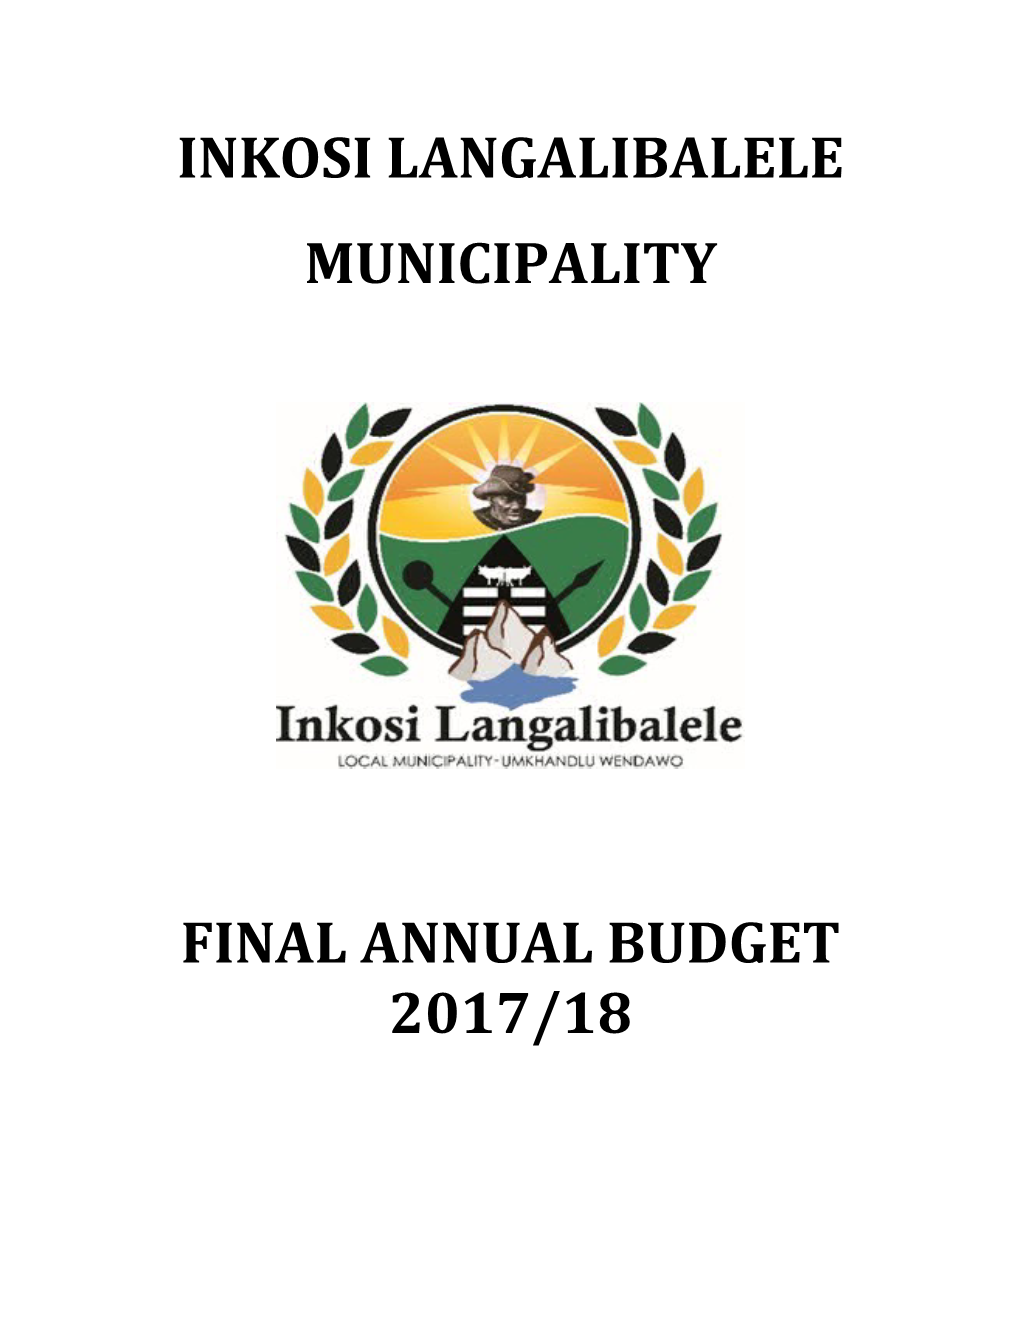 Inkosi Langalibalele Municipality